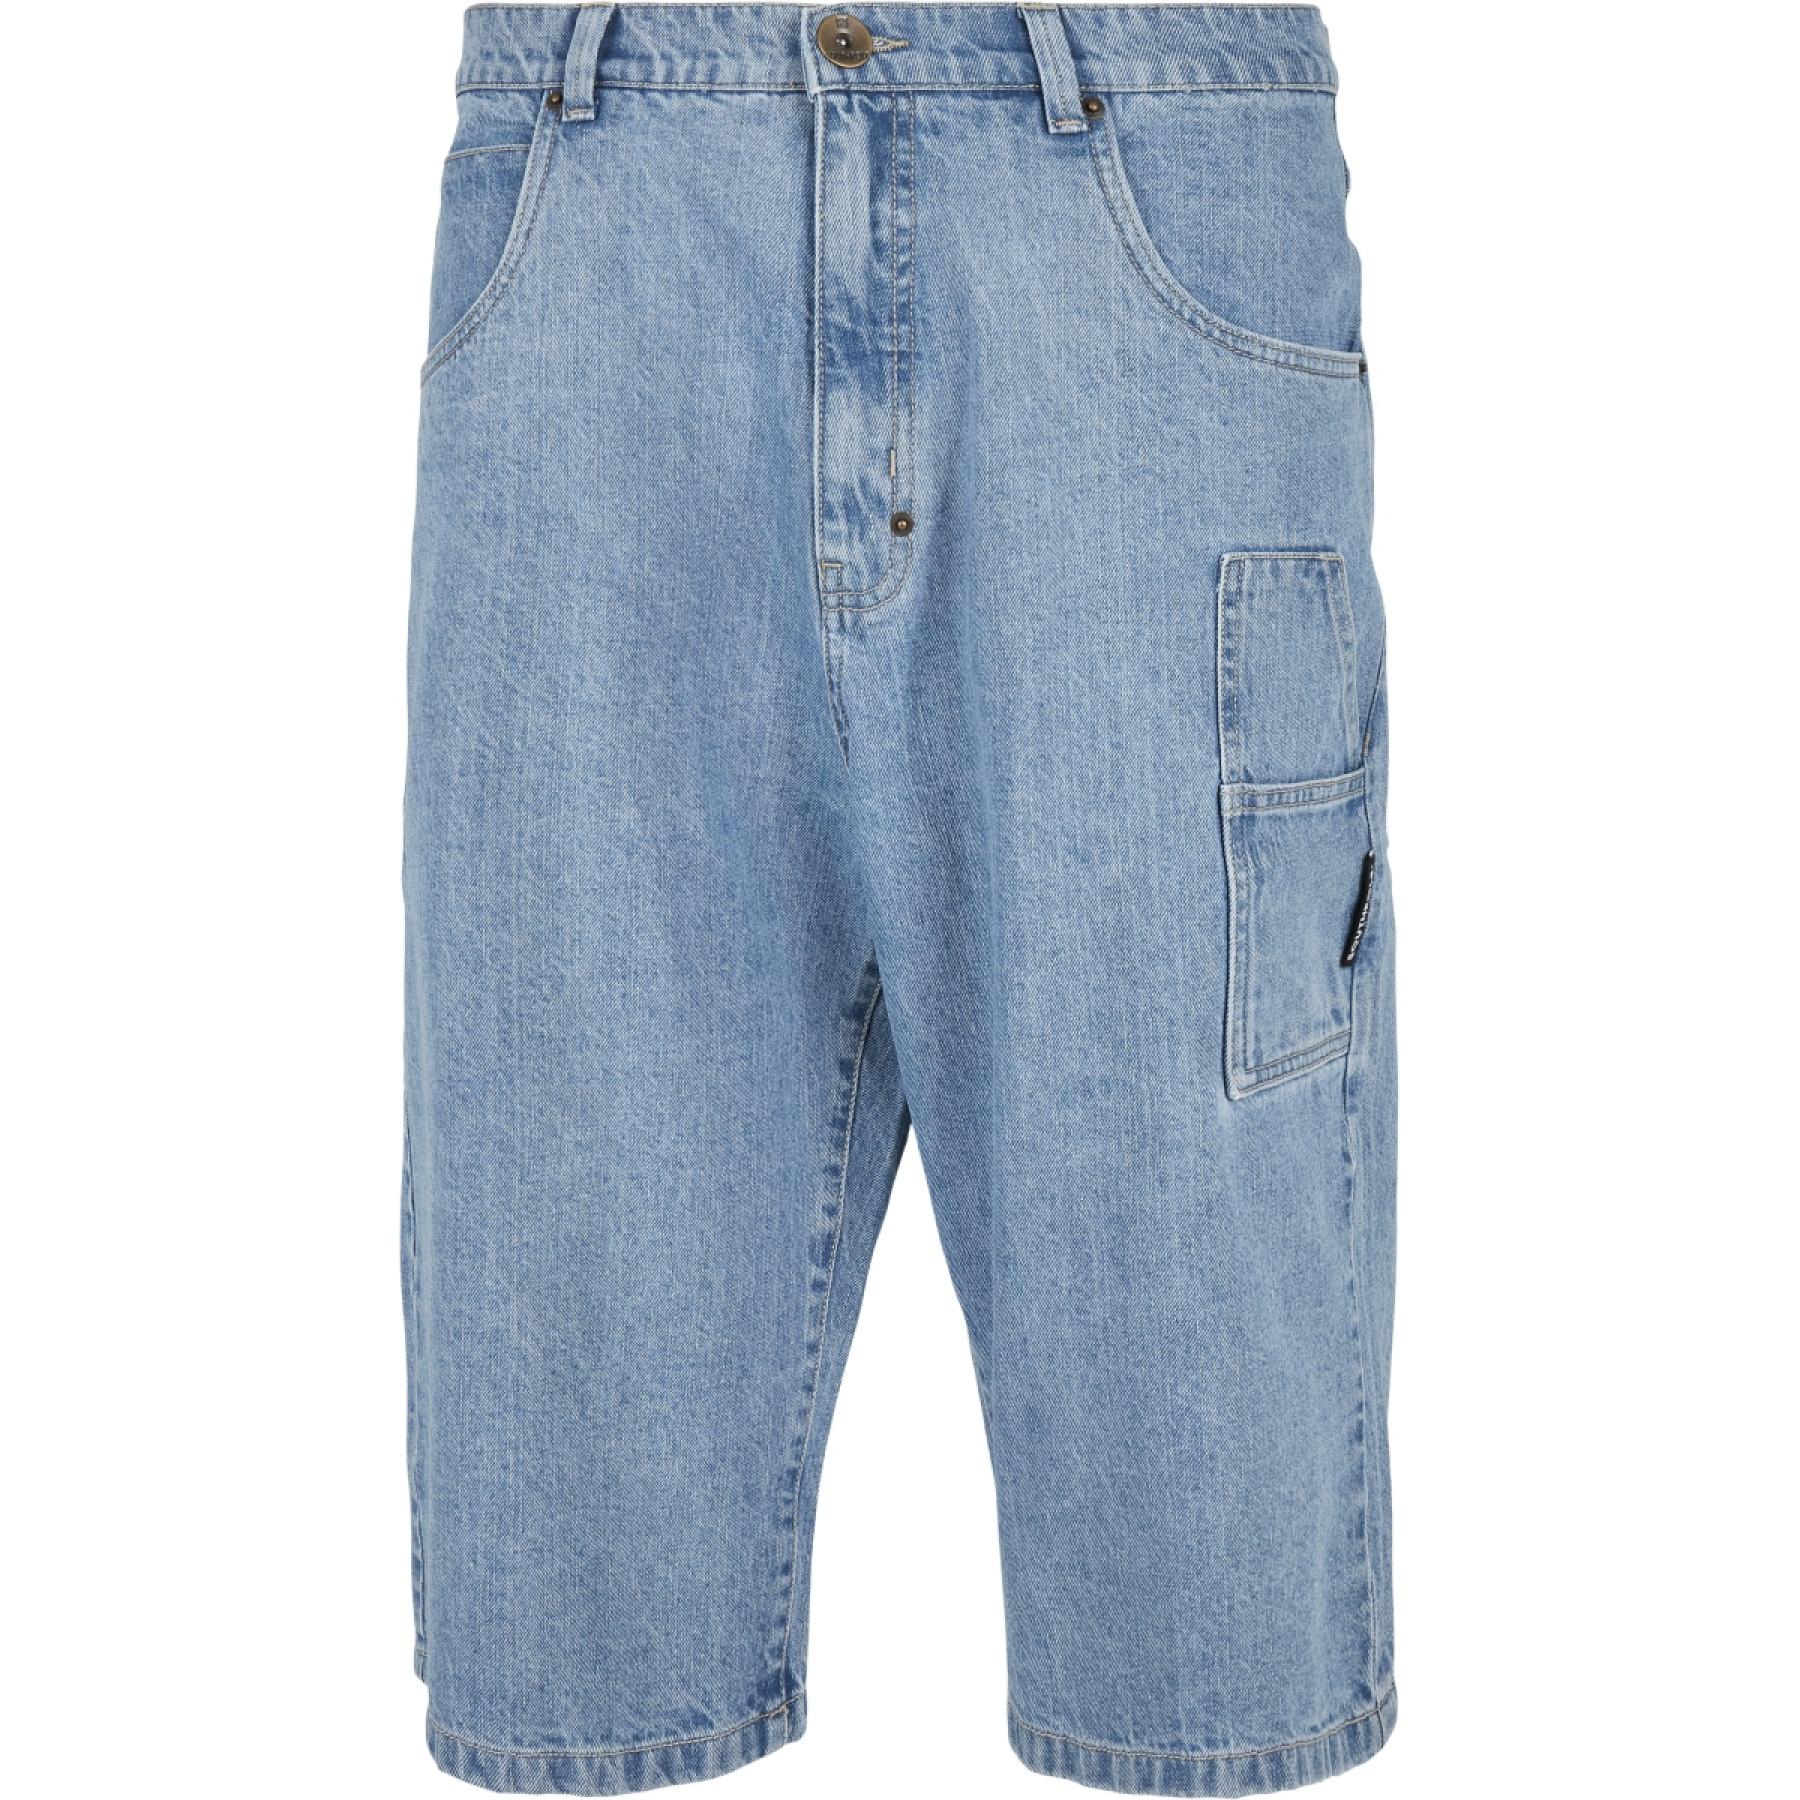 Southpole jeans shorts mens - Gem